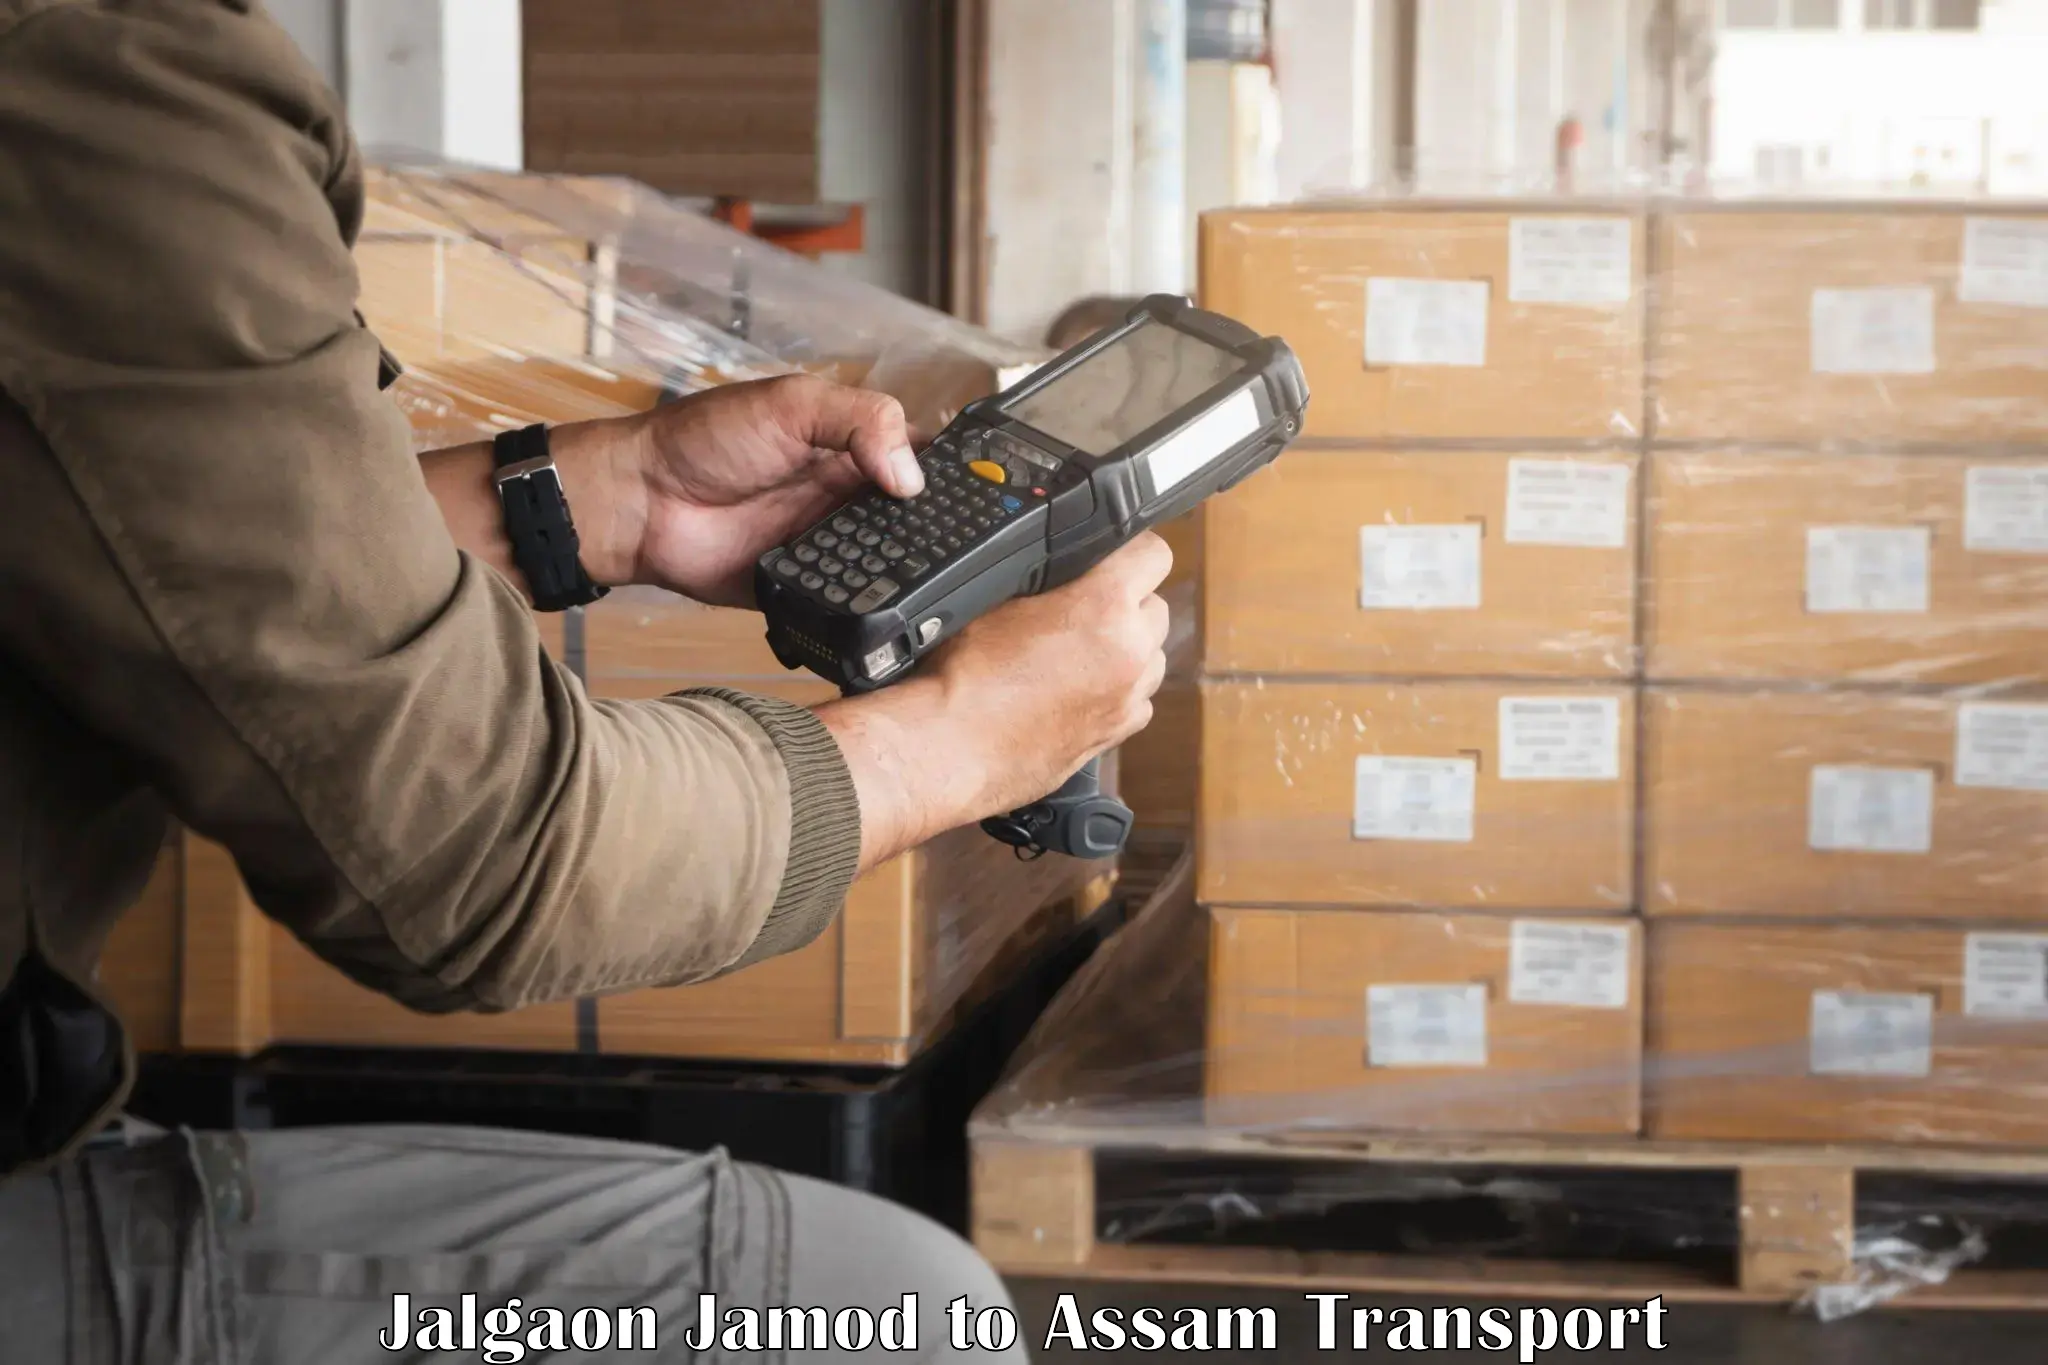 Shipping partner Jalgaon Jamod to Sivasagar